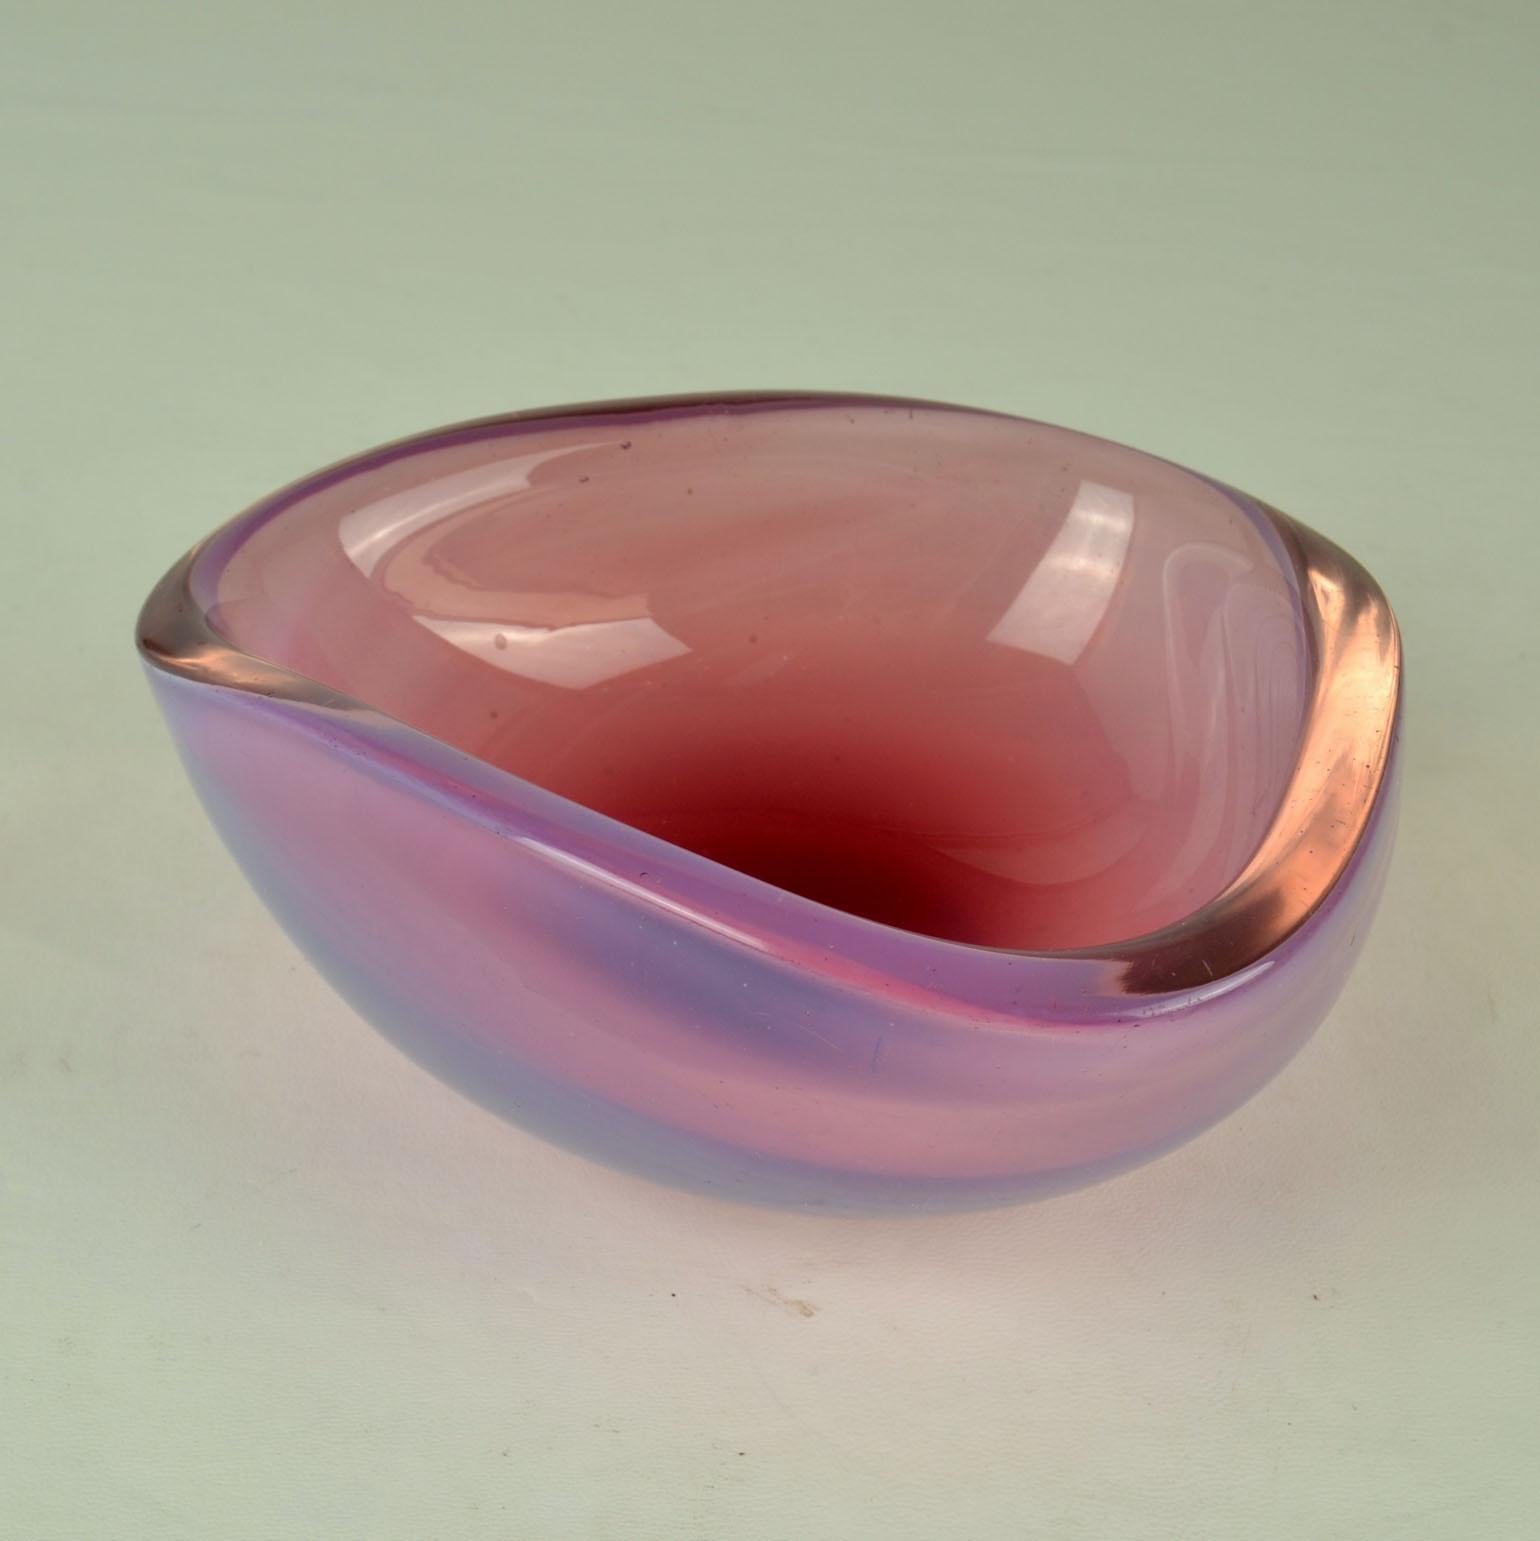 Glasschalen dreieckige Form von Flavio Poli für Seguso 1960er Jahre in zartem Rosa. Die Schale ist mundgeblasen, bekannt als venezianischer Sommerso, hergestellt in Murano, Venedig, Italien. 
Die Schalen sind eine Kombination aus zartem Rosa,